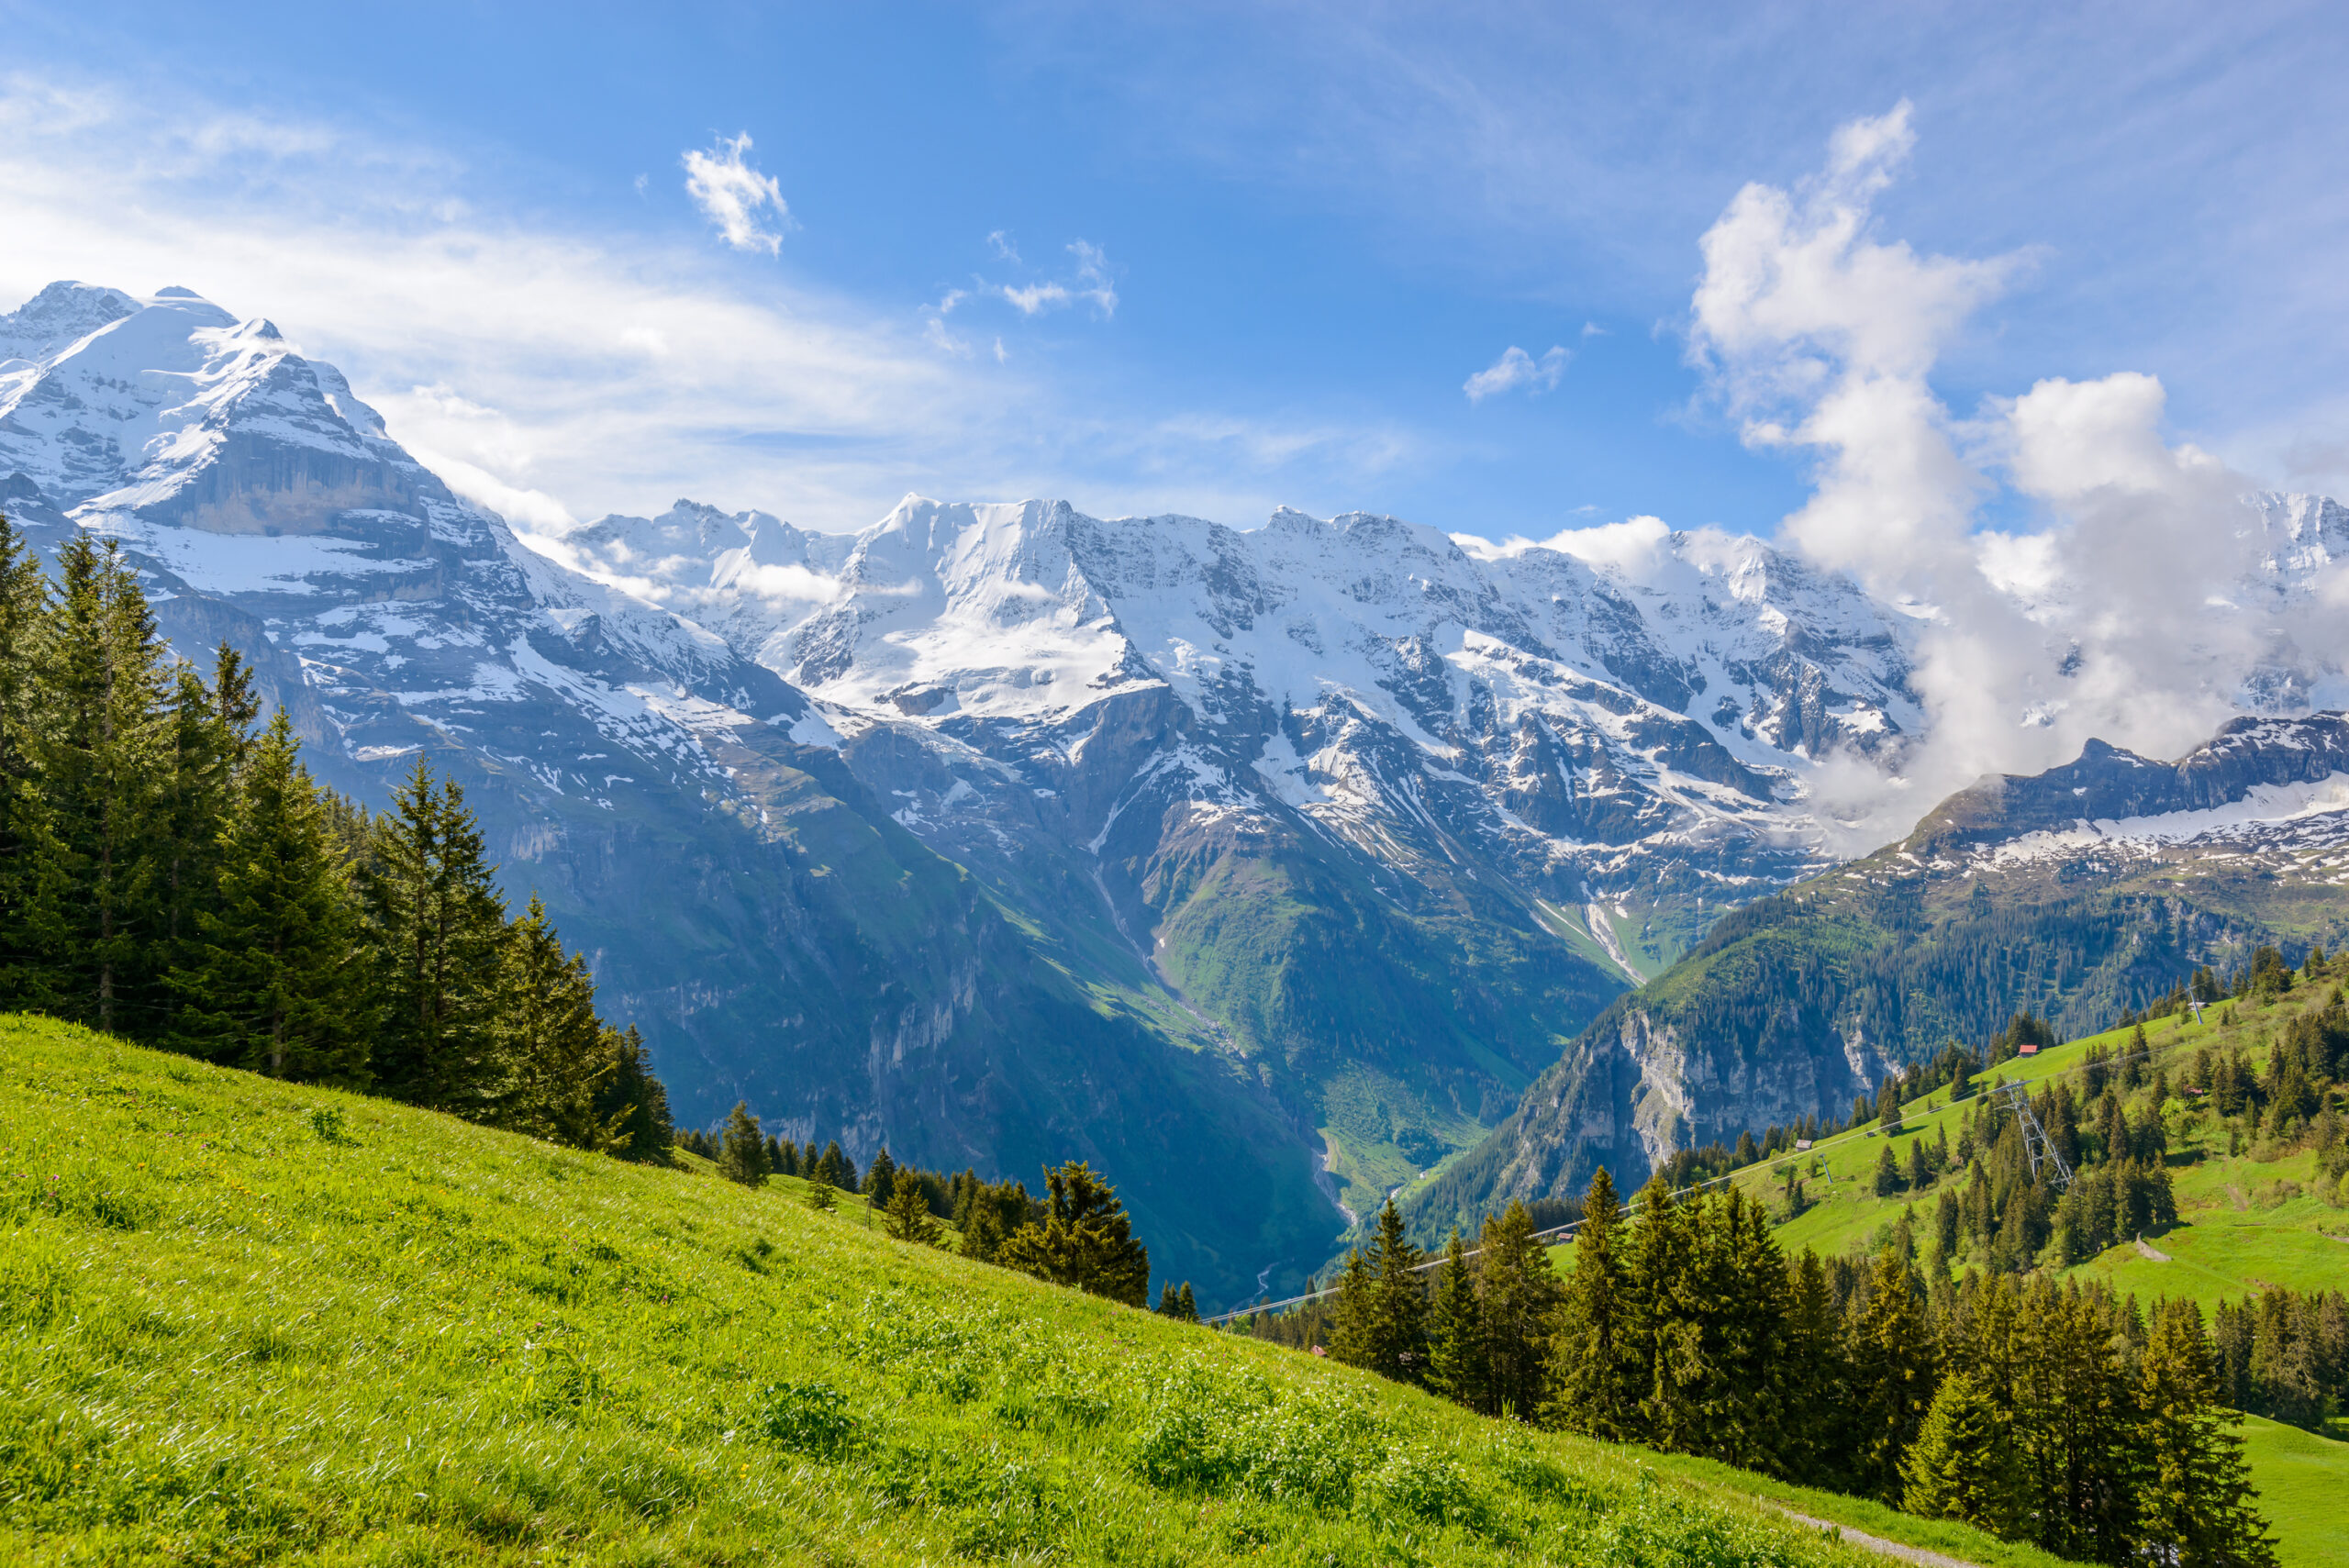 Switzerland - Đất nước thuộc châu Âu với ngành du lịch và tài chính phát triển